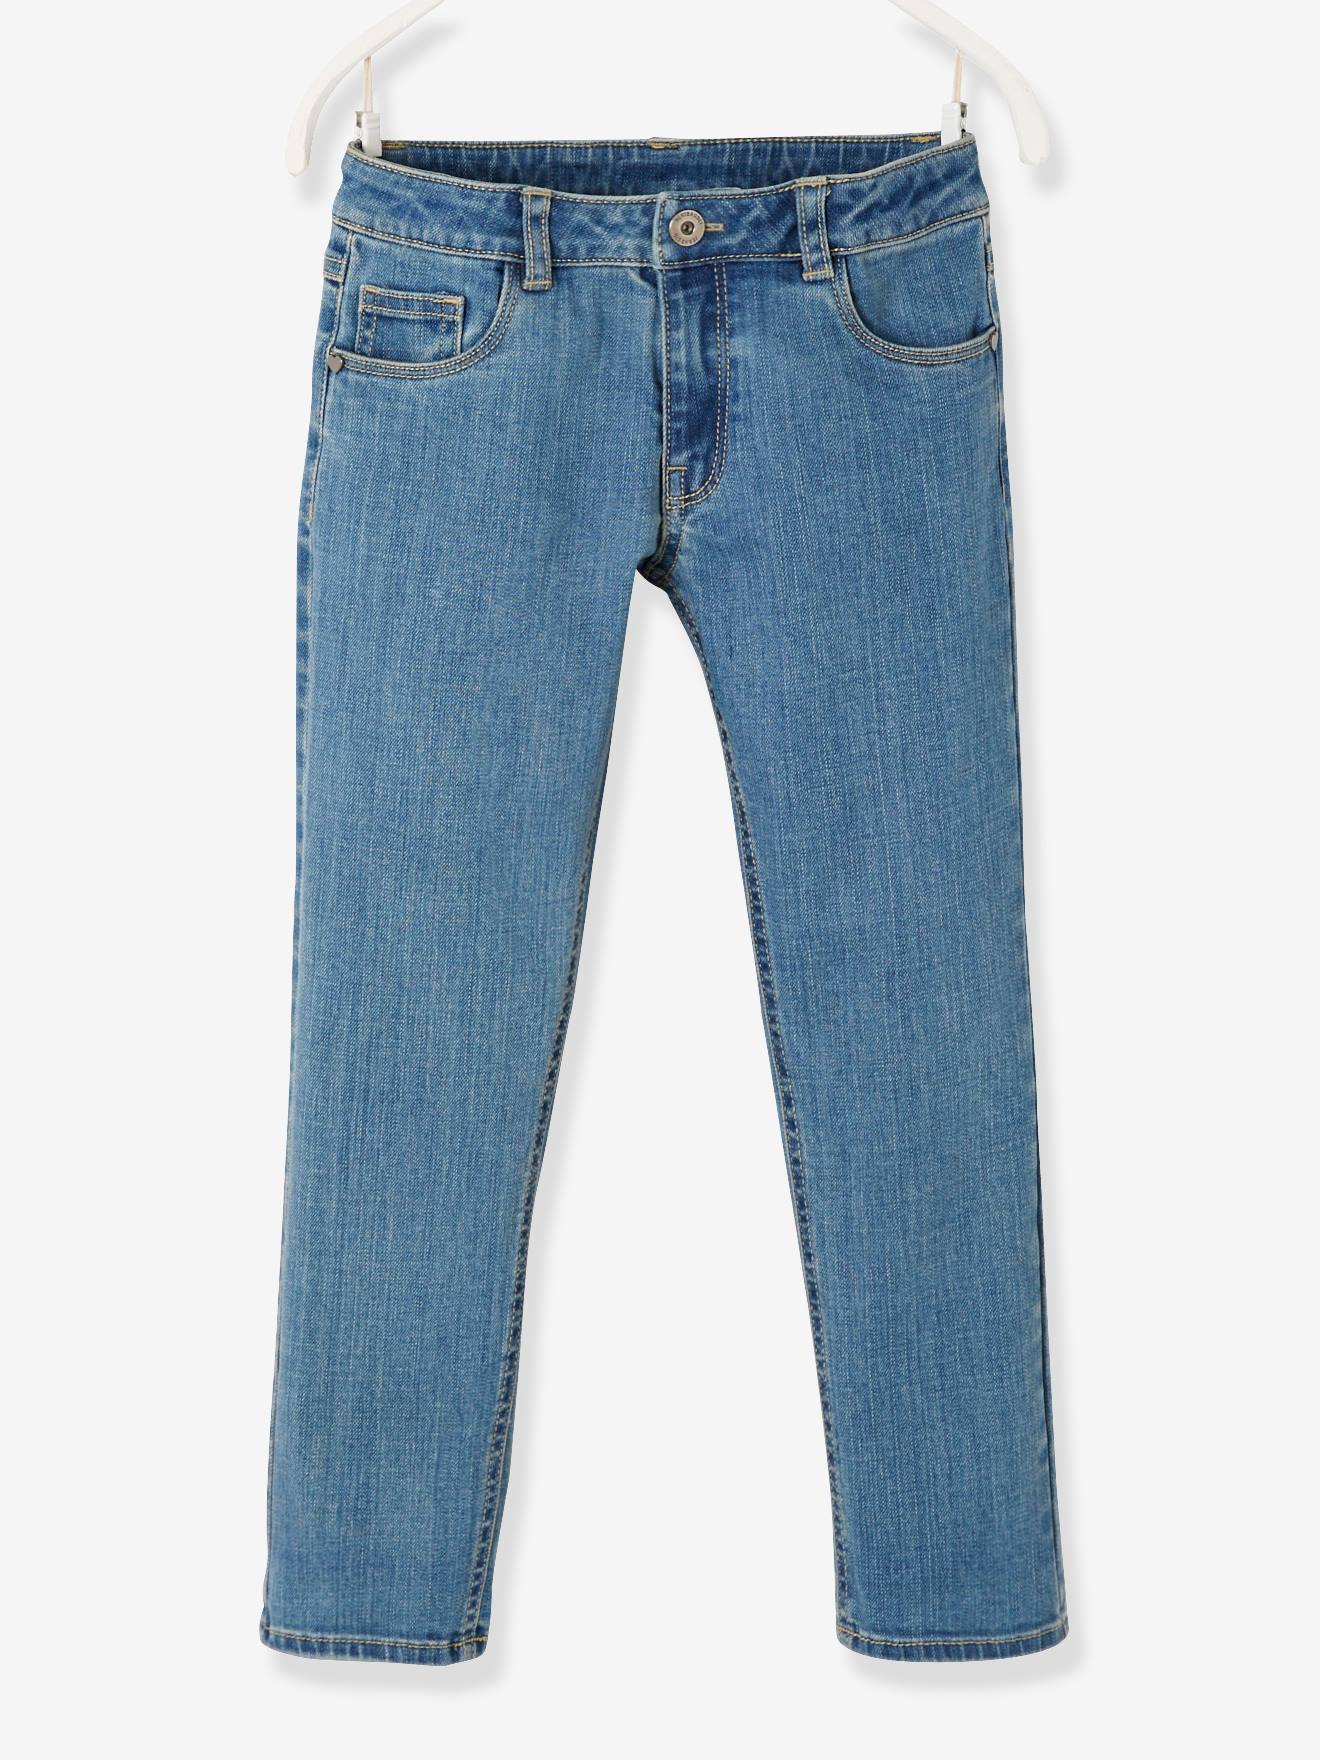 Rechte jeans voor meisjes verstelbaar bij de heupen LARGE denim stone